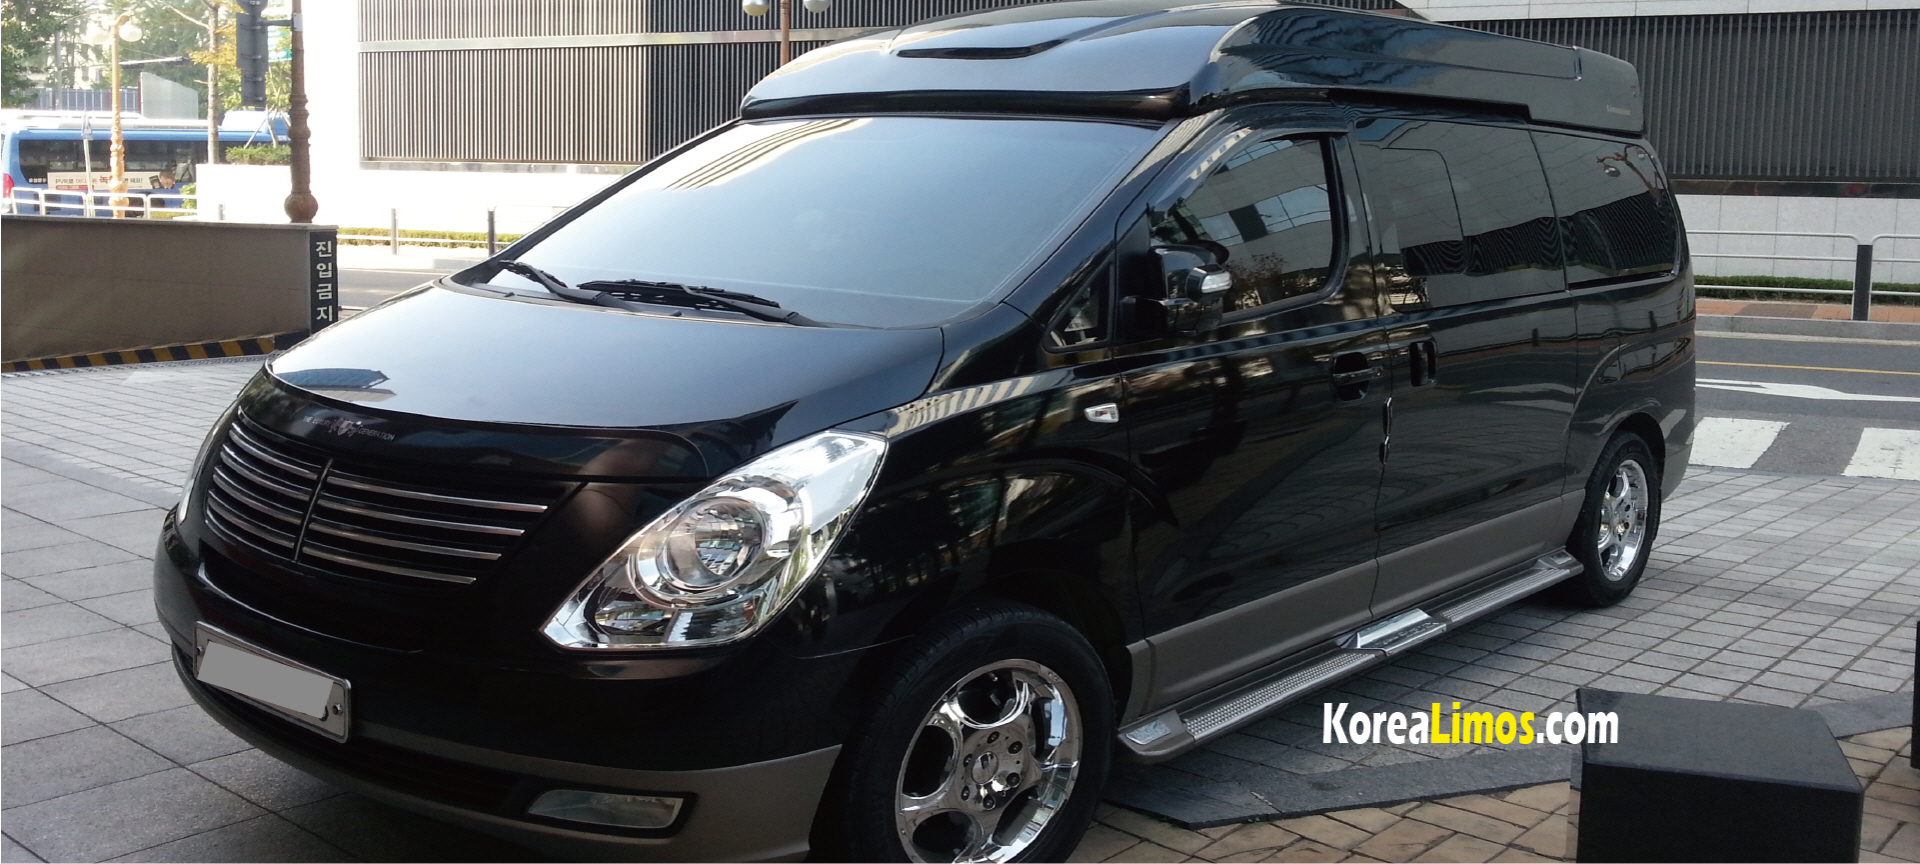 Korea van rental with driver service